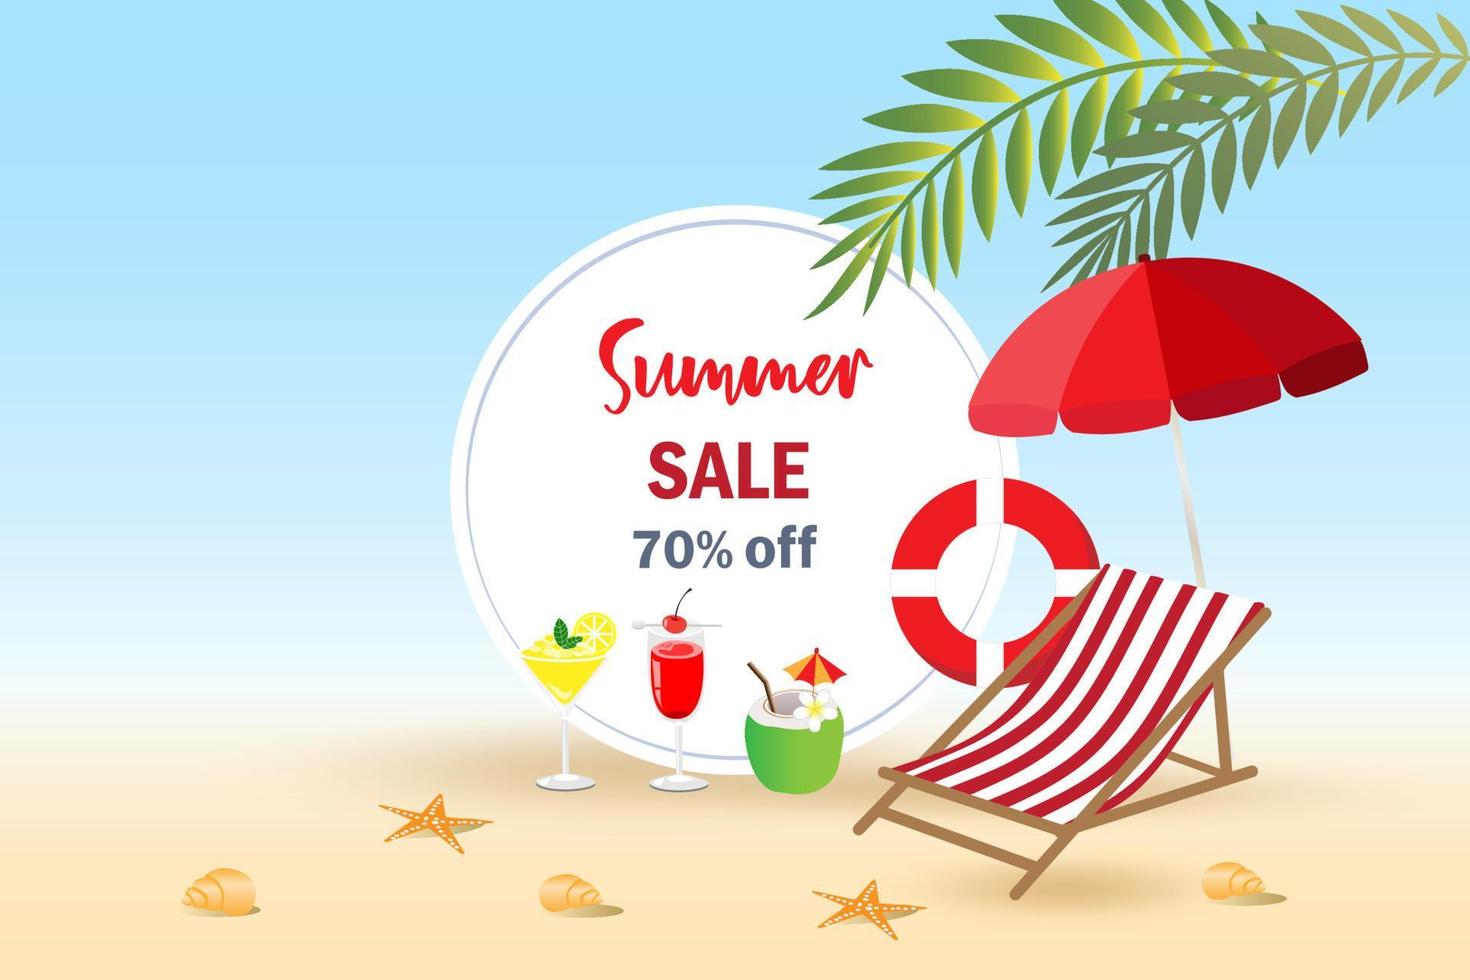 promoção de desconto de vendas de verão na praia. compras on-line, banner de campanha de marketing, modelo da web e publicidade. vetor